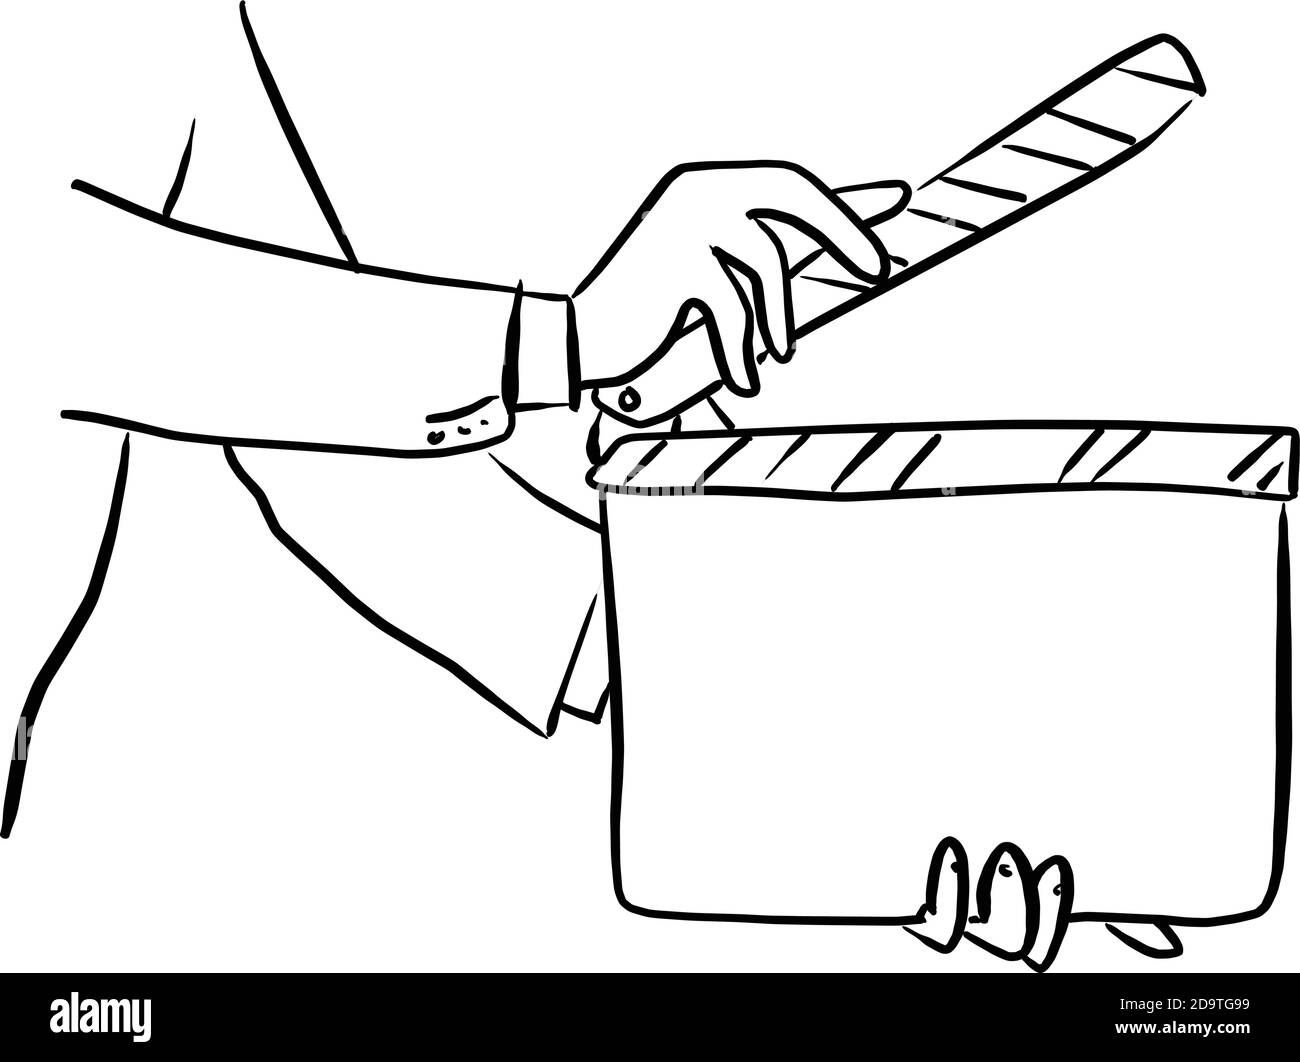 primo piano uomo d'affari tenendo film clapper bordo vettore illustrazione schizzo doodle disegnata a mano con linee nere isolate su sfondo bianco Illustrazione Vettoriale